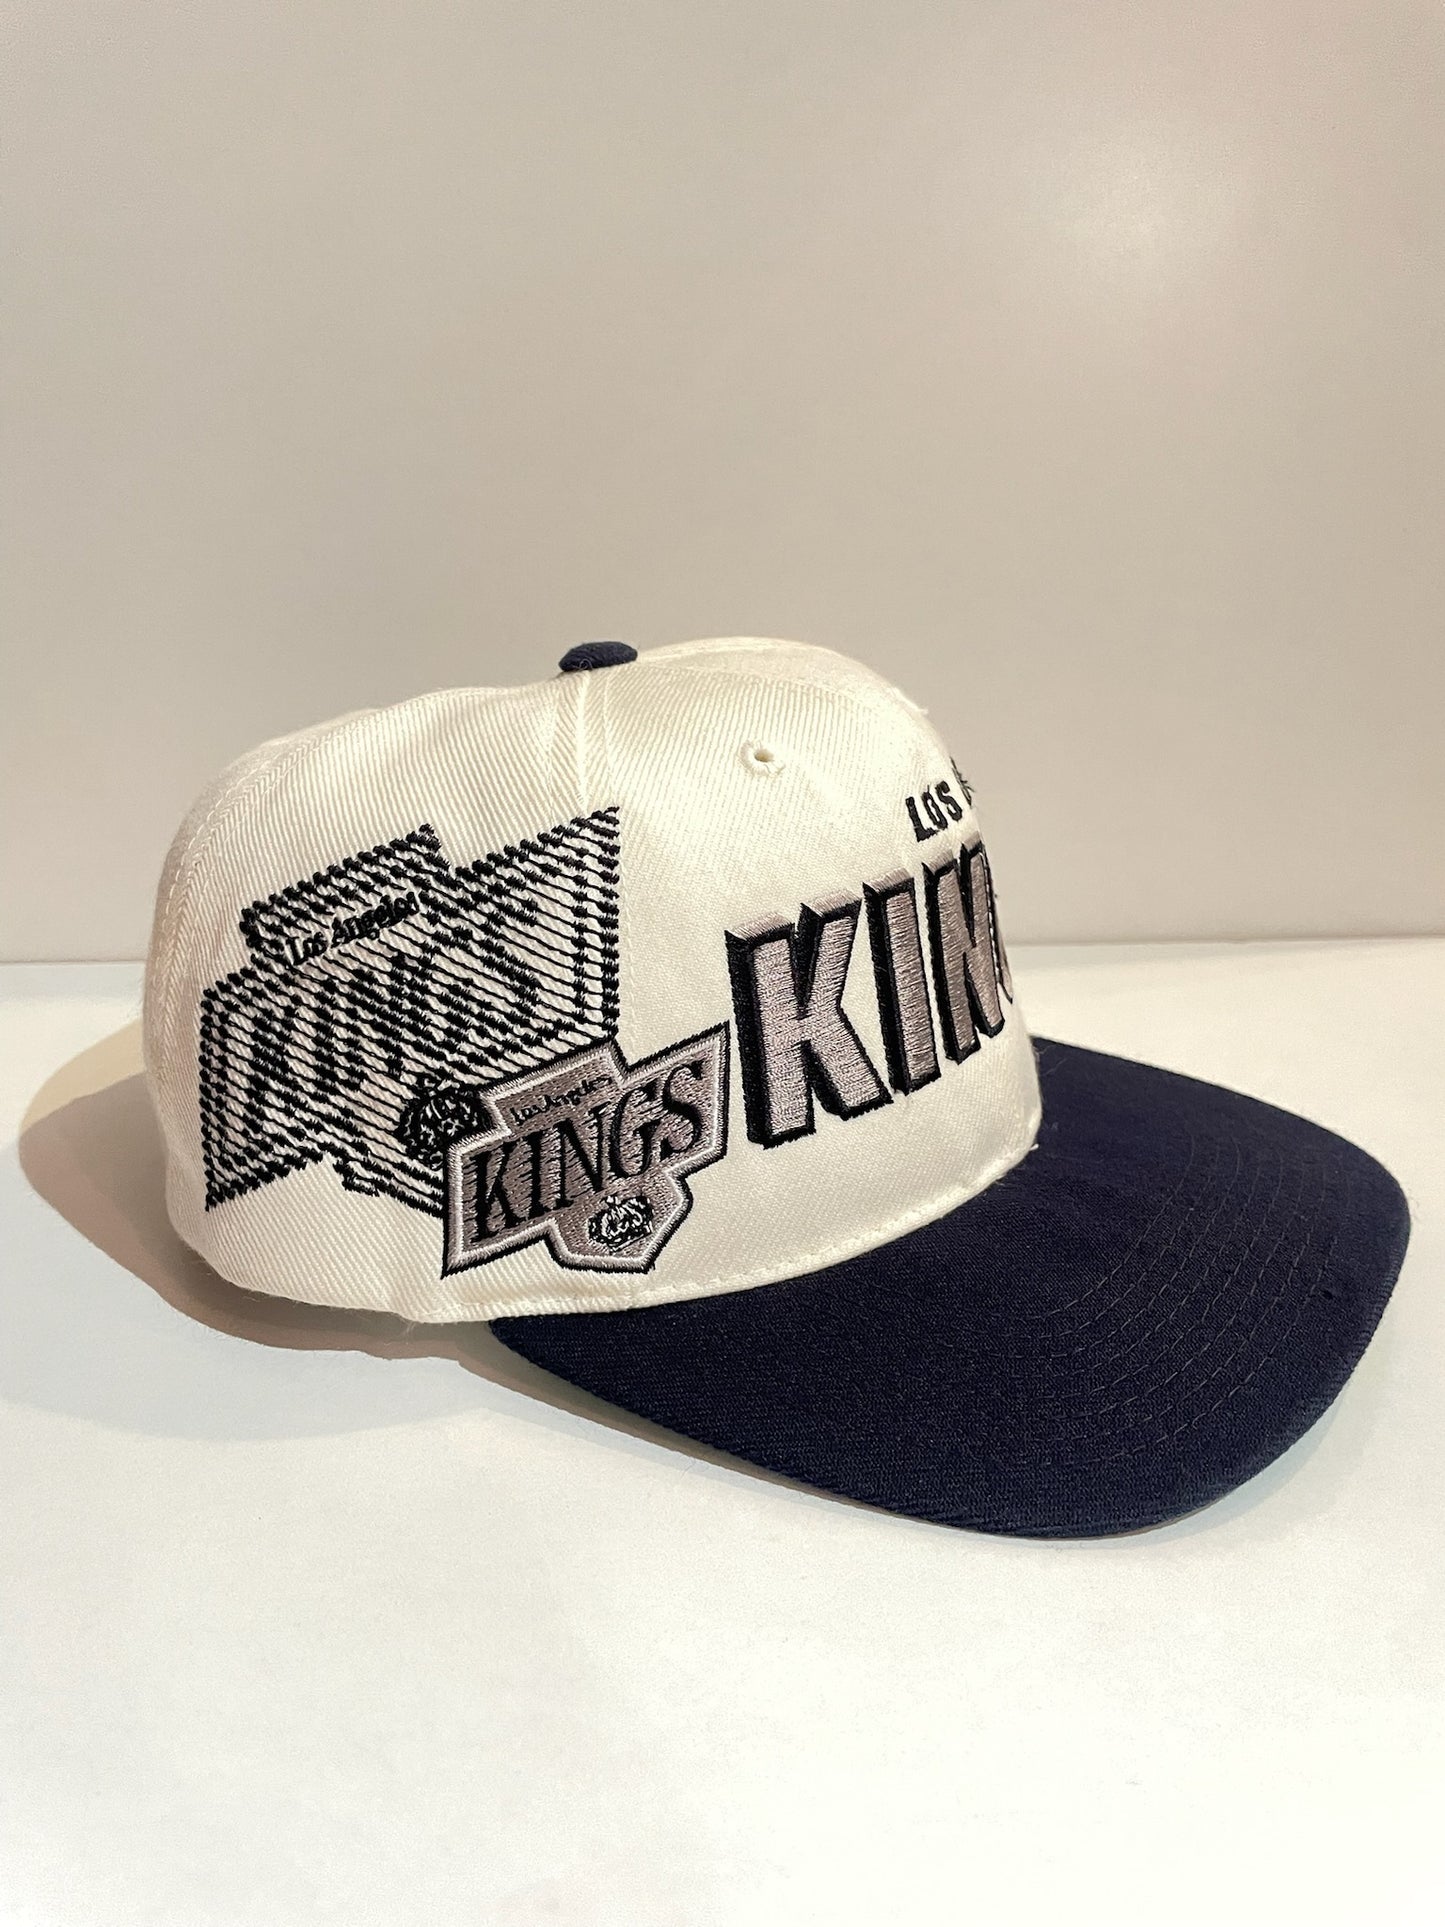 VINTAGE 90s LOS ANGELES KINGS "SHADOW LASER" SPORTS SPECIALTIES SNAPBACK CAP HAT